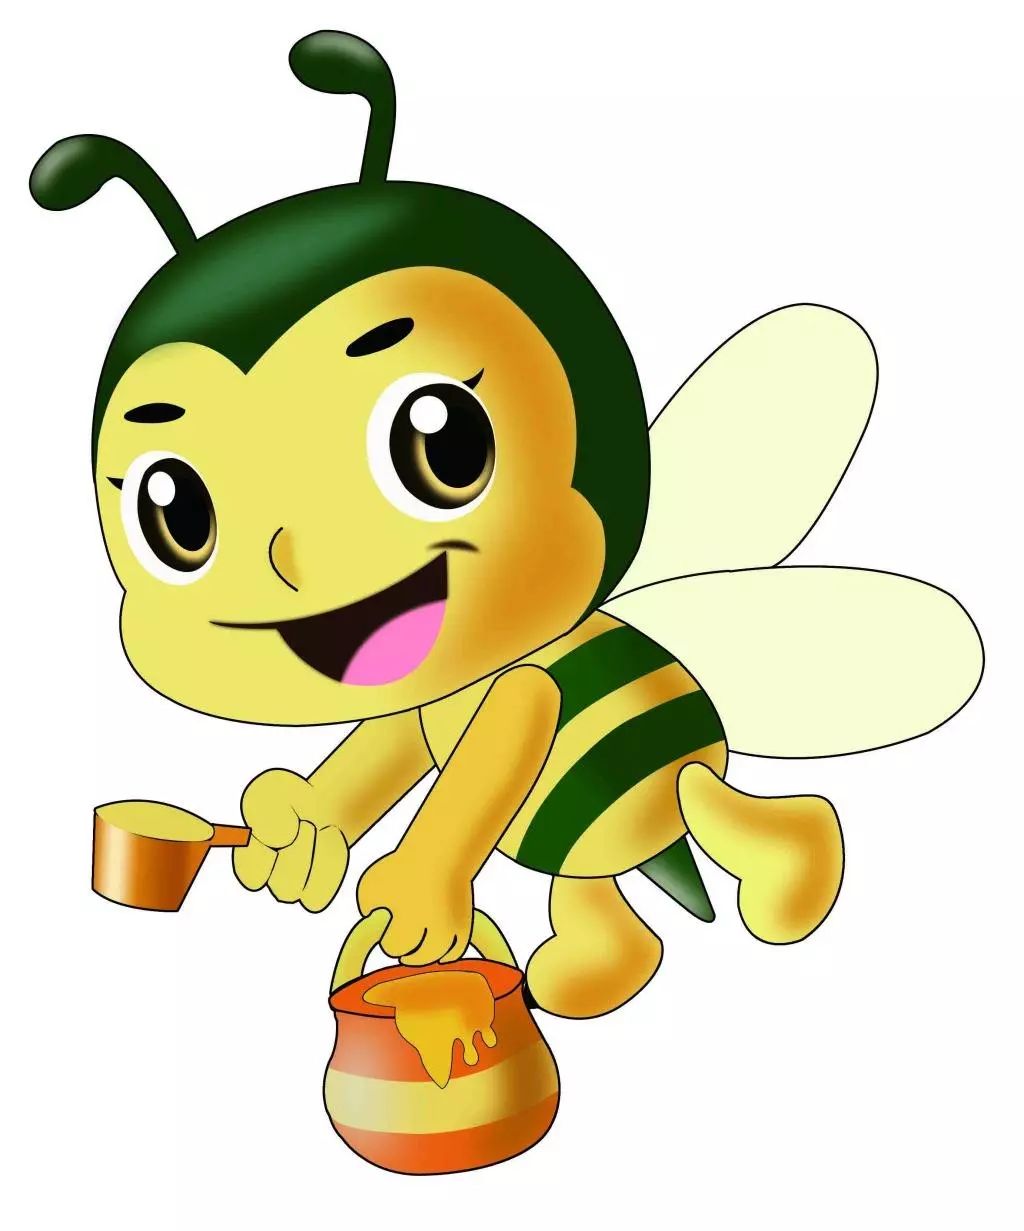 儿歌唱的"小蜜蜂,整天忙,采花蜜,酿蜜糖,说的就是工蜂.